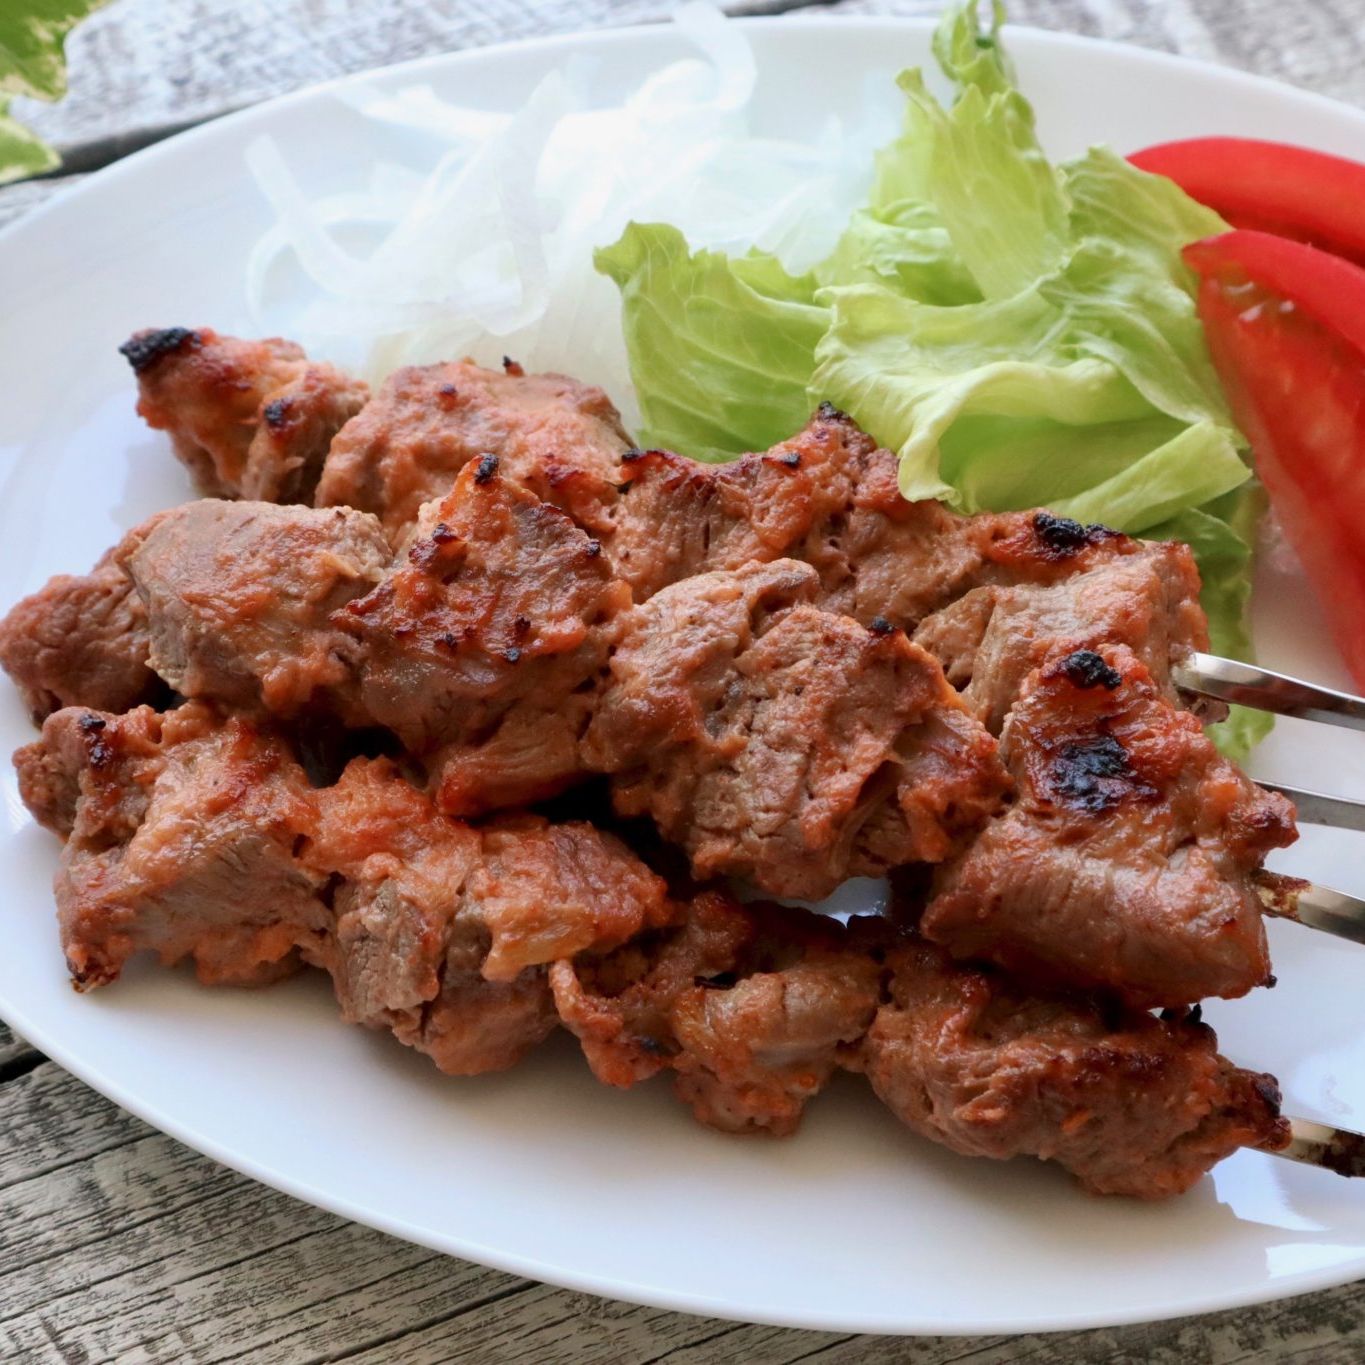 シシカバブの本格レシピ トルコの人気肉料理 ケバブの作り方と食べ方 やまでら くみこ のレシピ